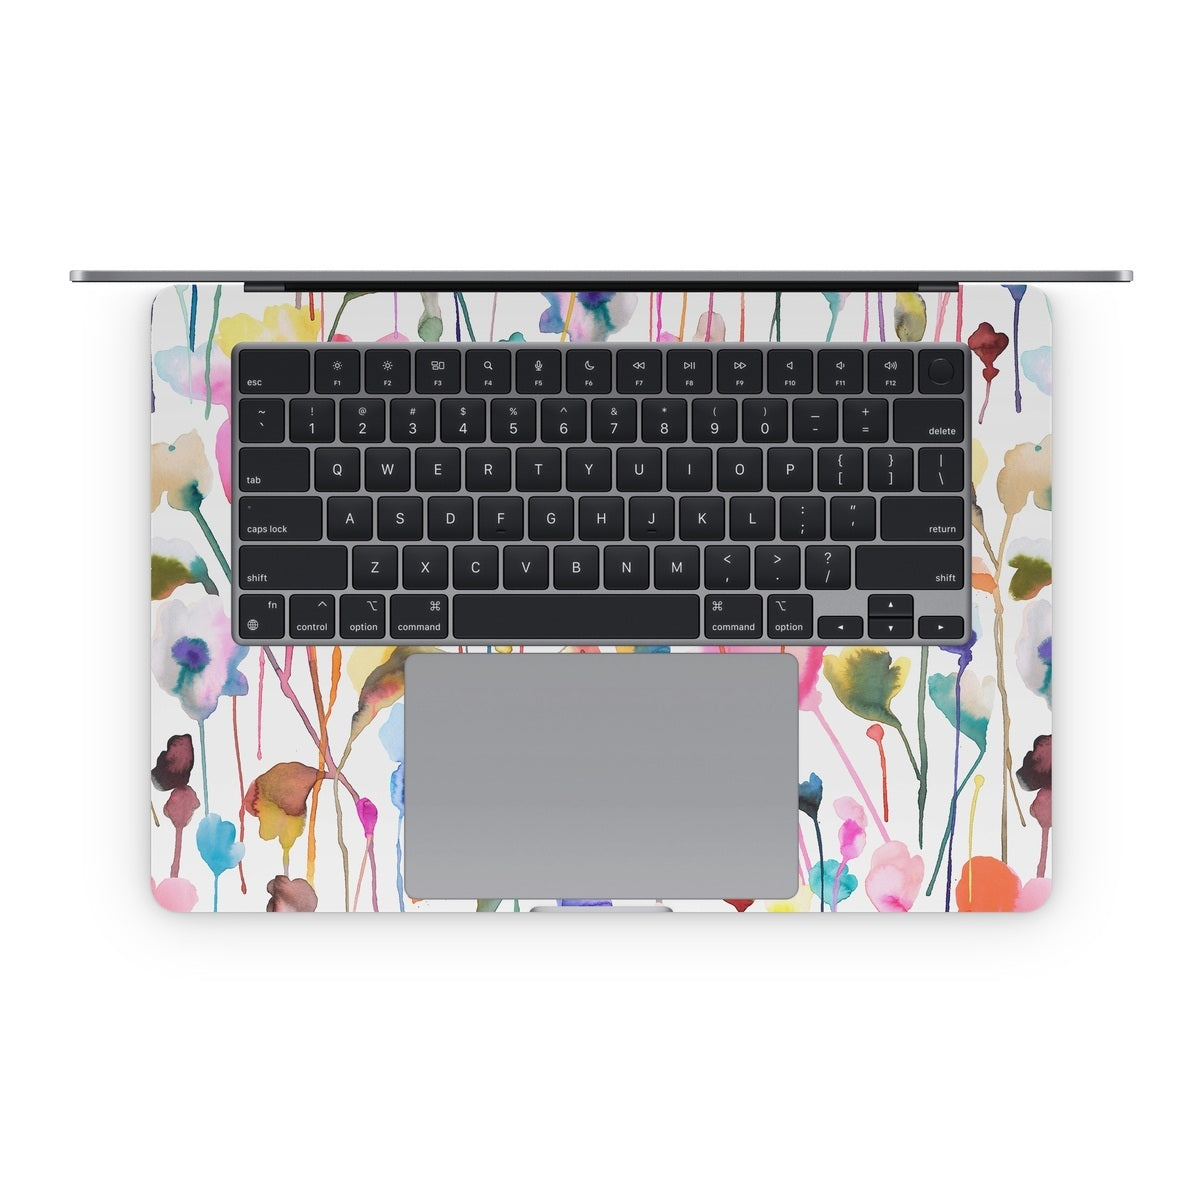 Watercolor Wild Flowers - Apple MacBook Skin